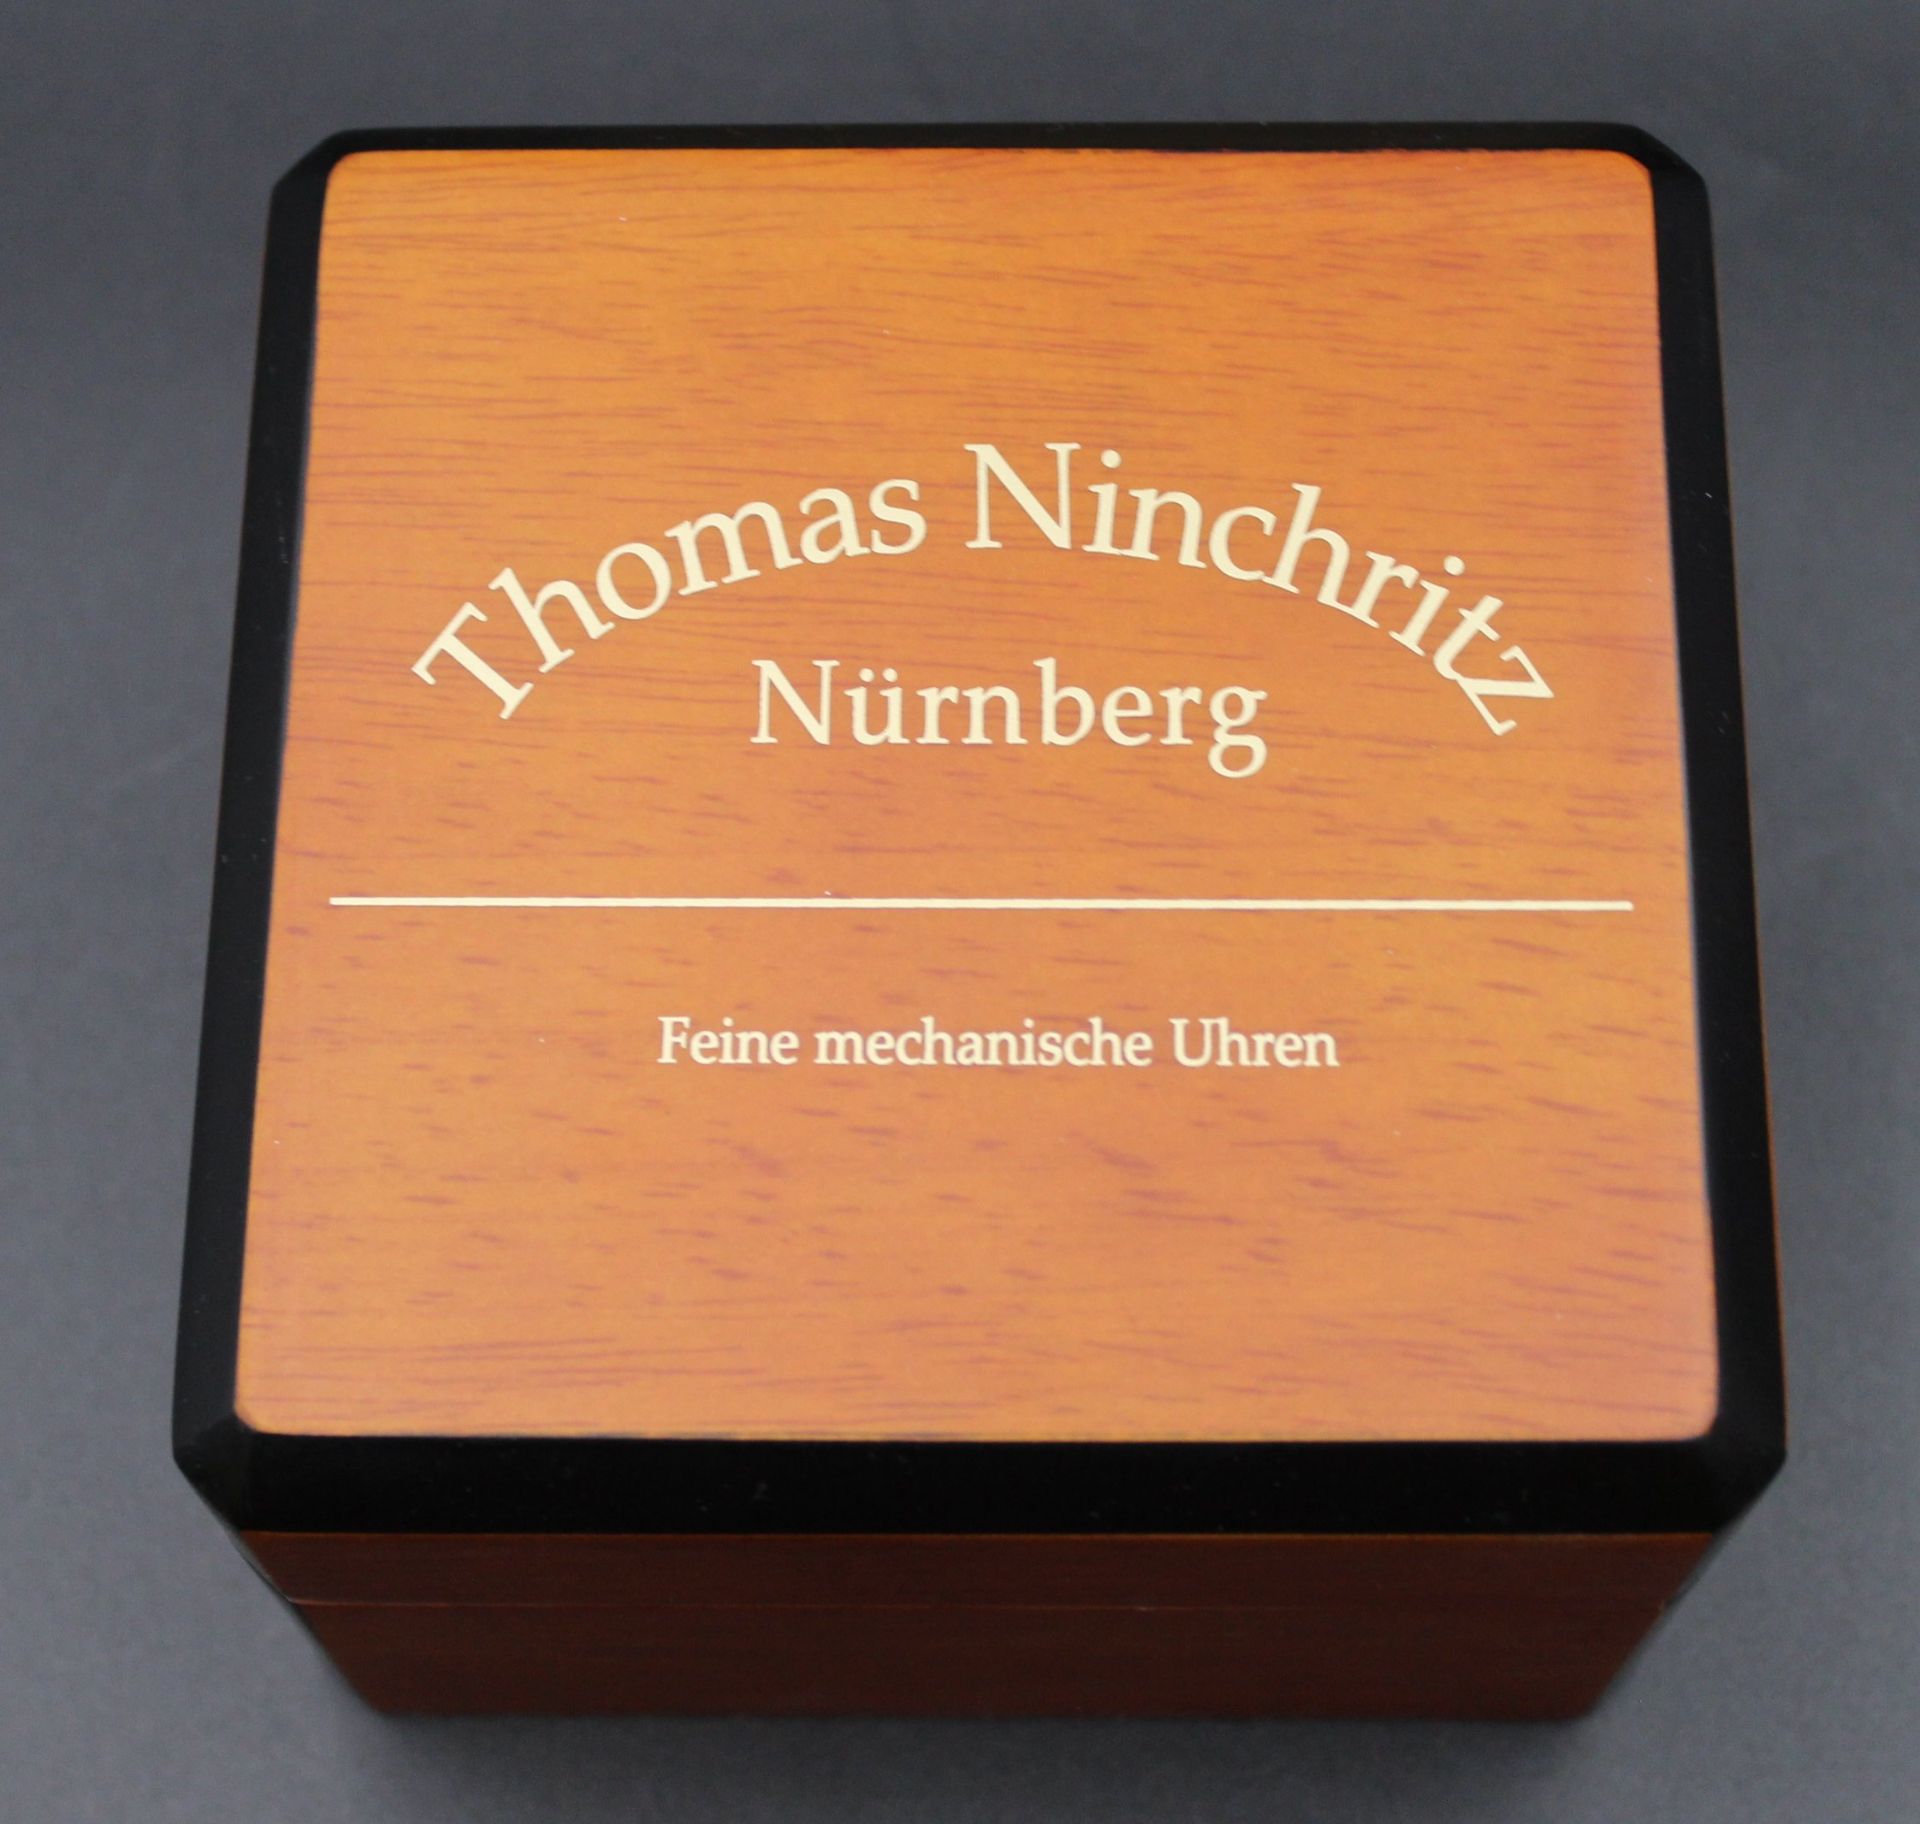 Uhrenkasten, Thomas Ninchritz Nürnberg, Gebrauchsspuren - Bild 3 aus 7